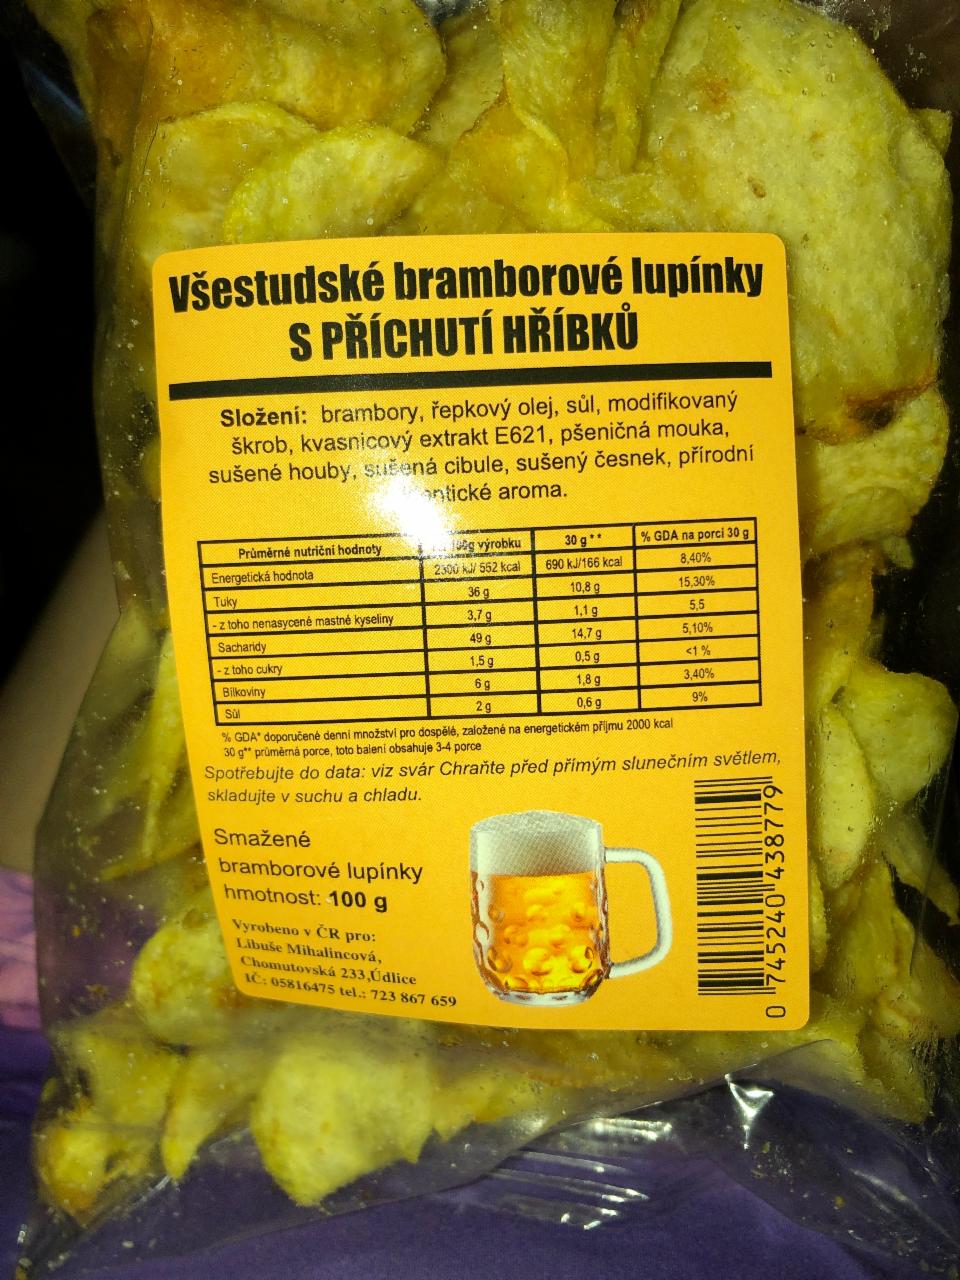 Fotografie - Všestudské bramborové lupínky s příchutí hříbků Libuše Mihalincová